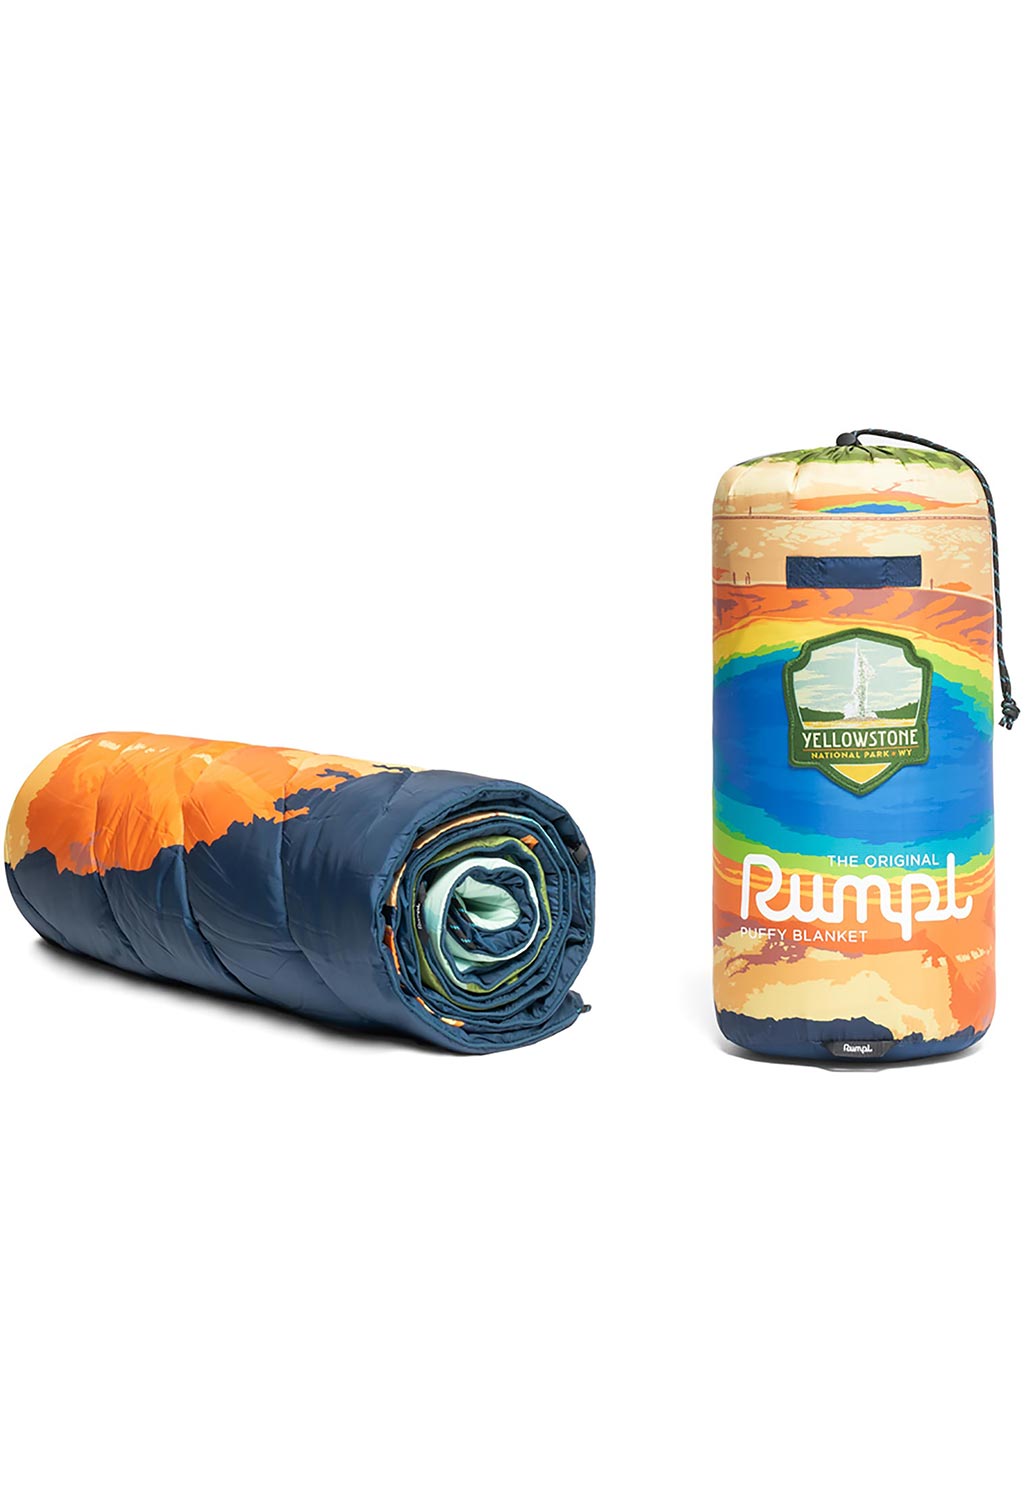 Rumpl Original Puffy Blanket 1P - Yellowstone